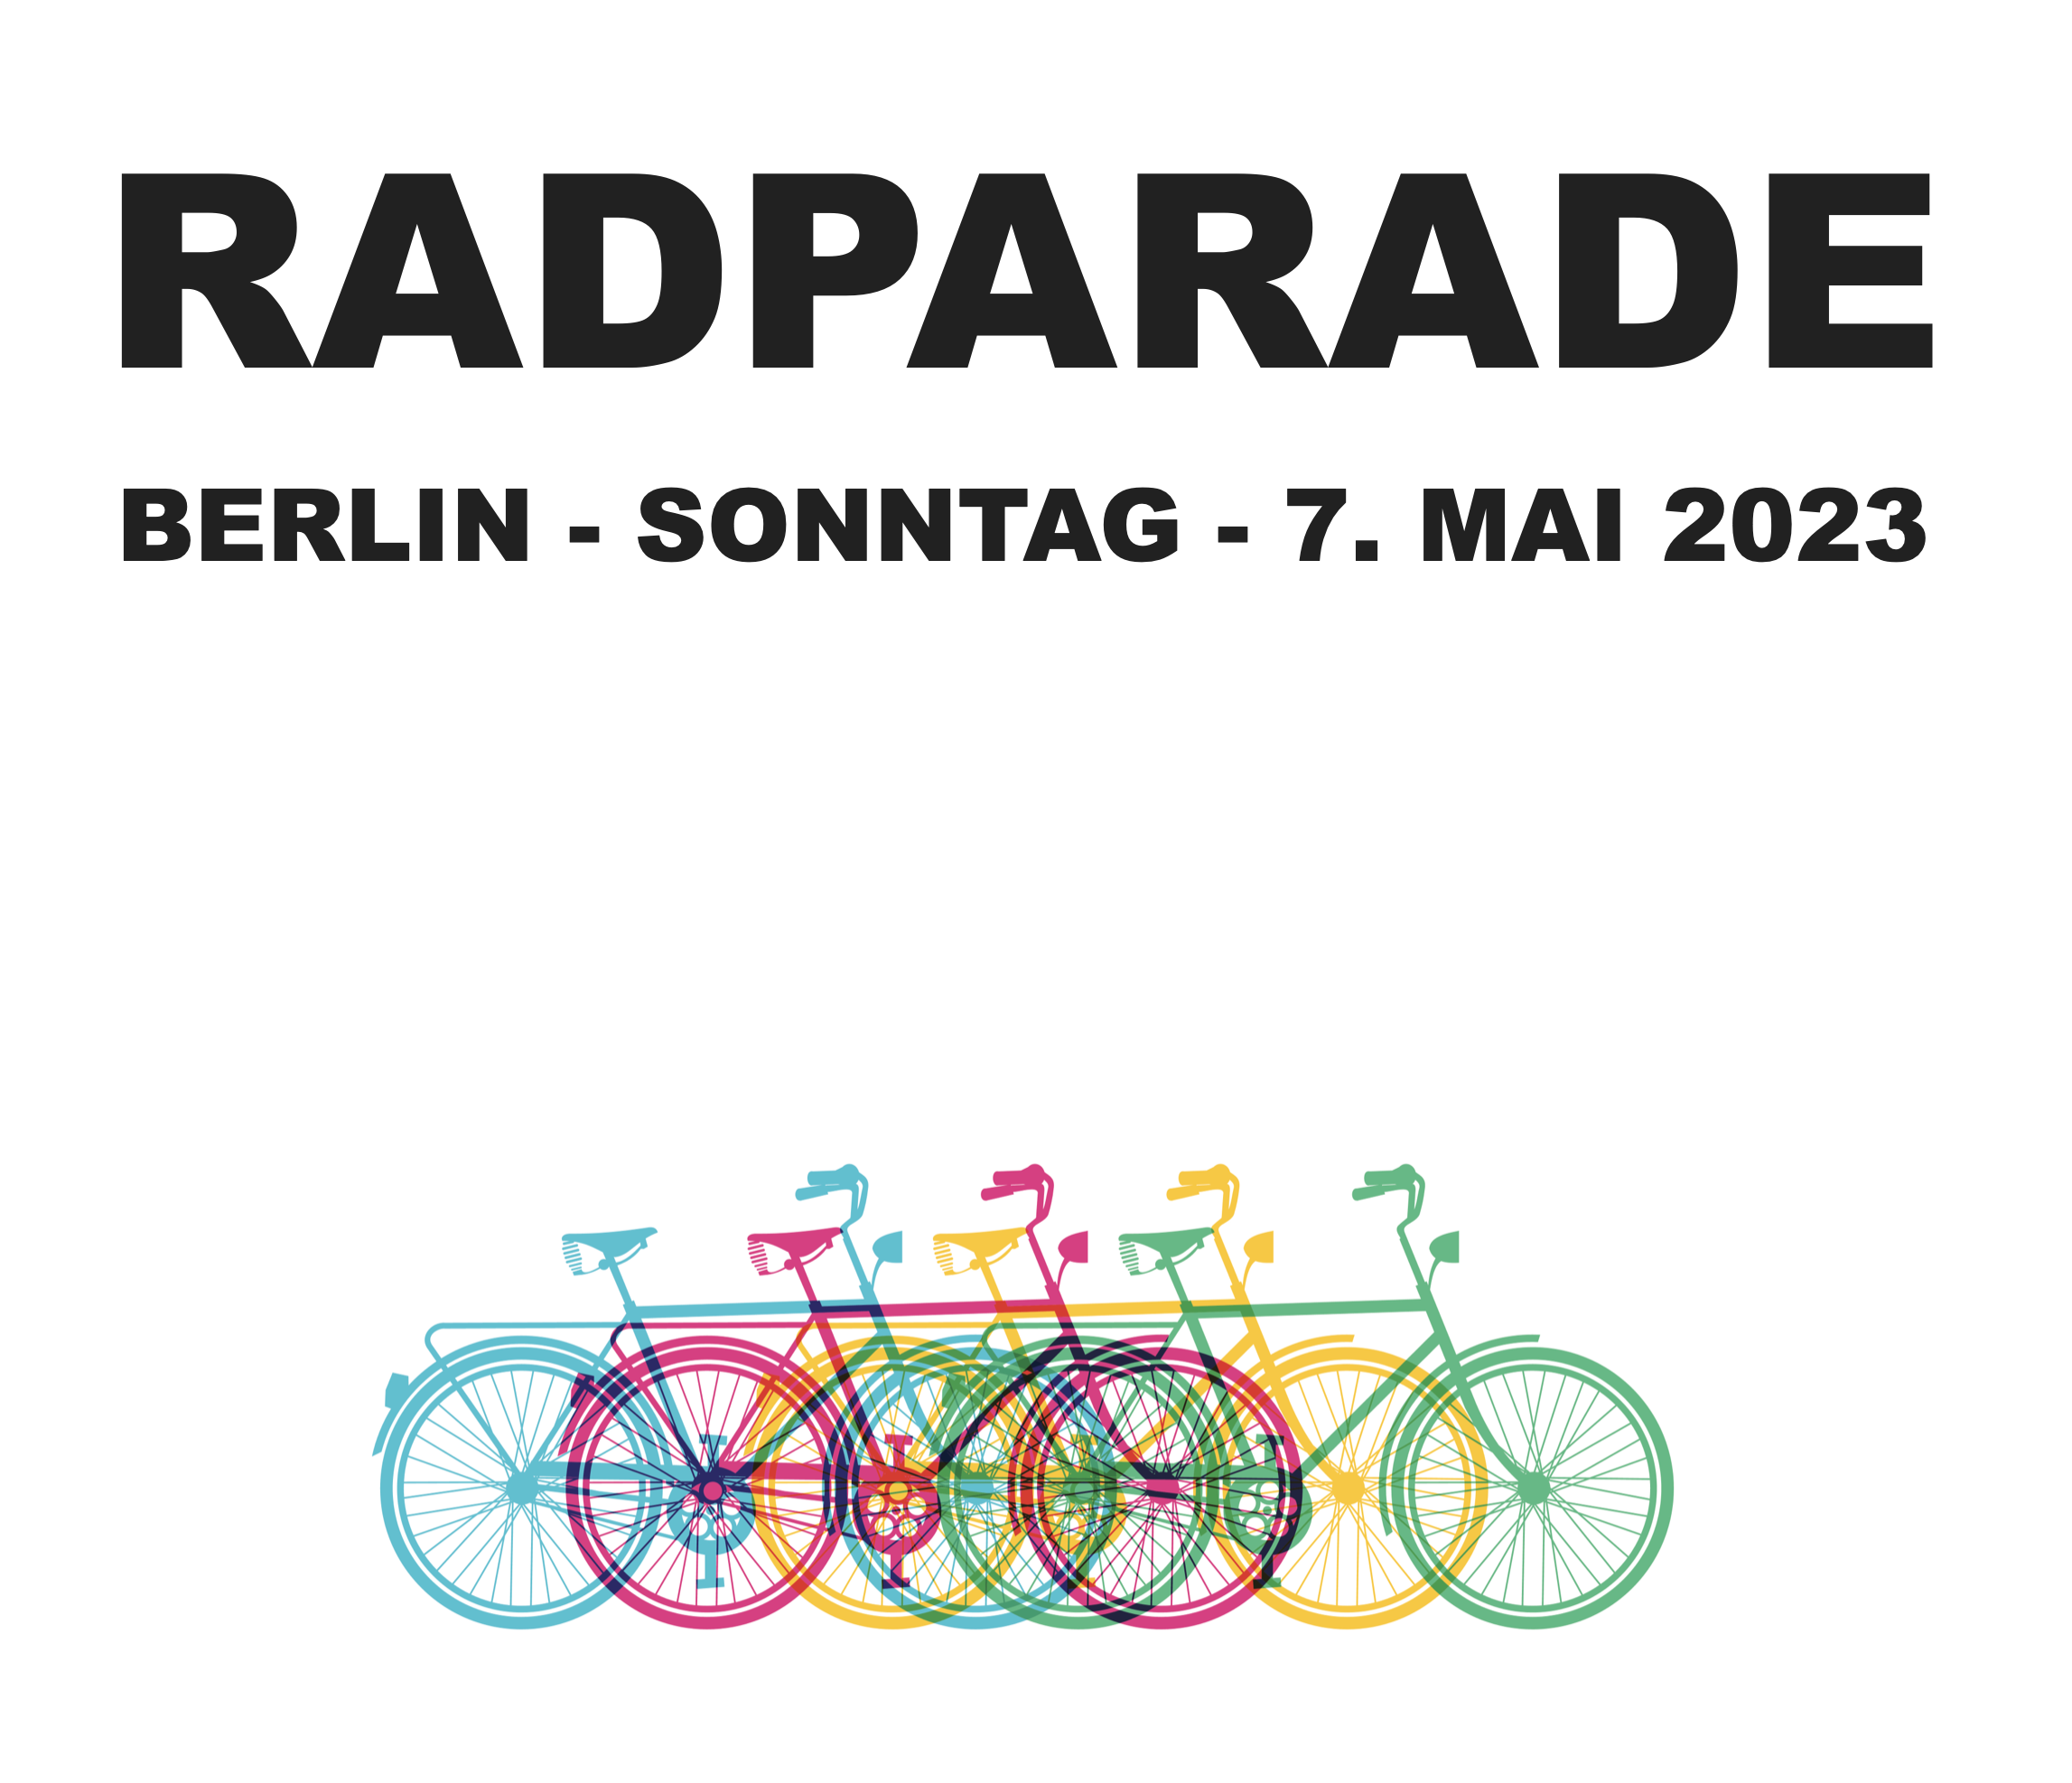 Radparade Berlin